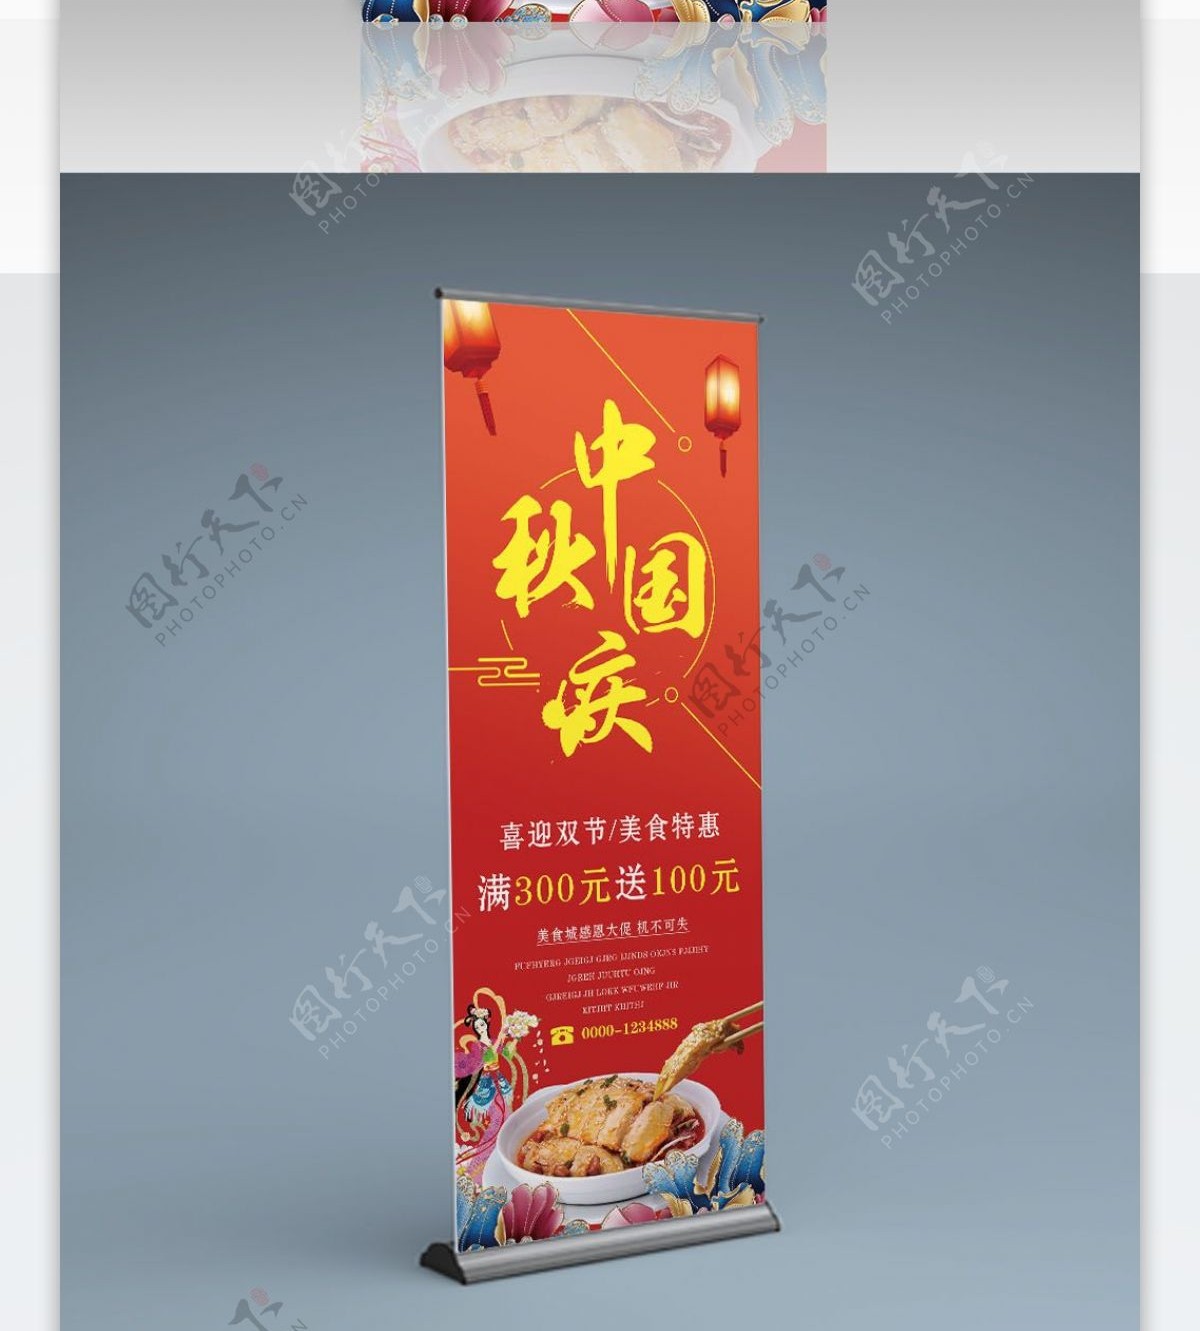 红色喜庆中秋节国庆节双节特惠餐厅促销海报